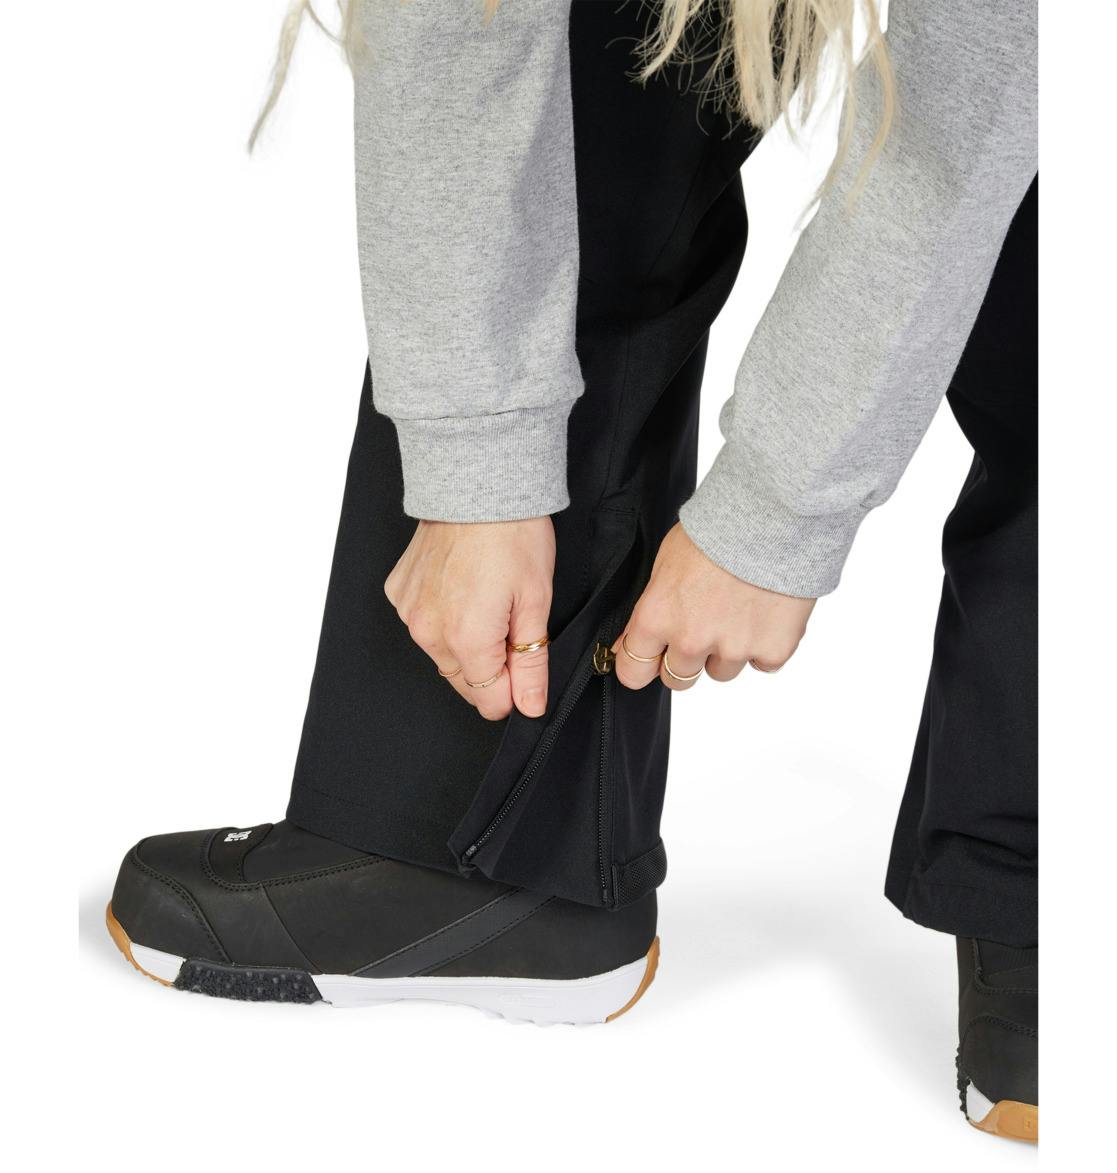 Dc Shoes Valiant - Technical Snow Bib Pants For Women - Black